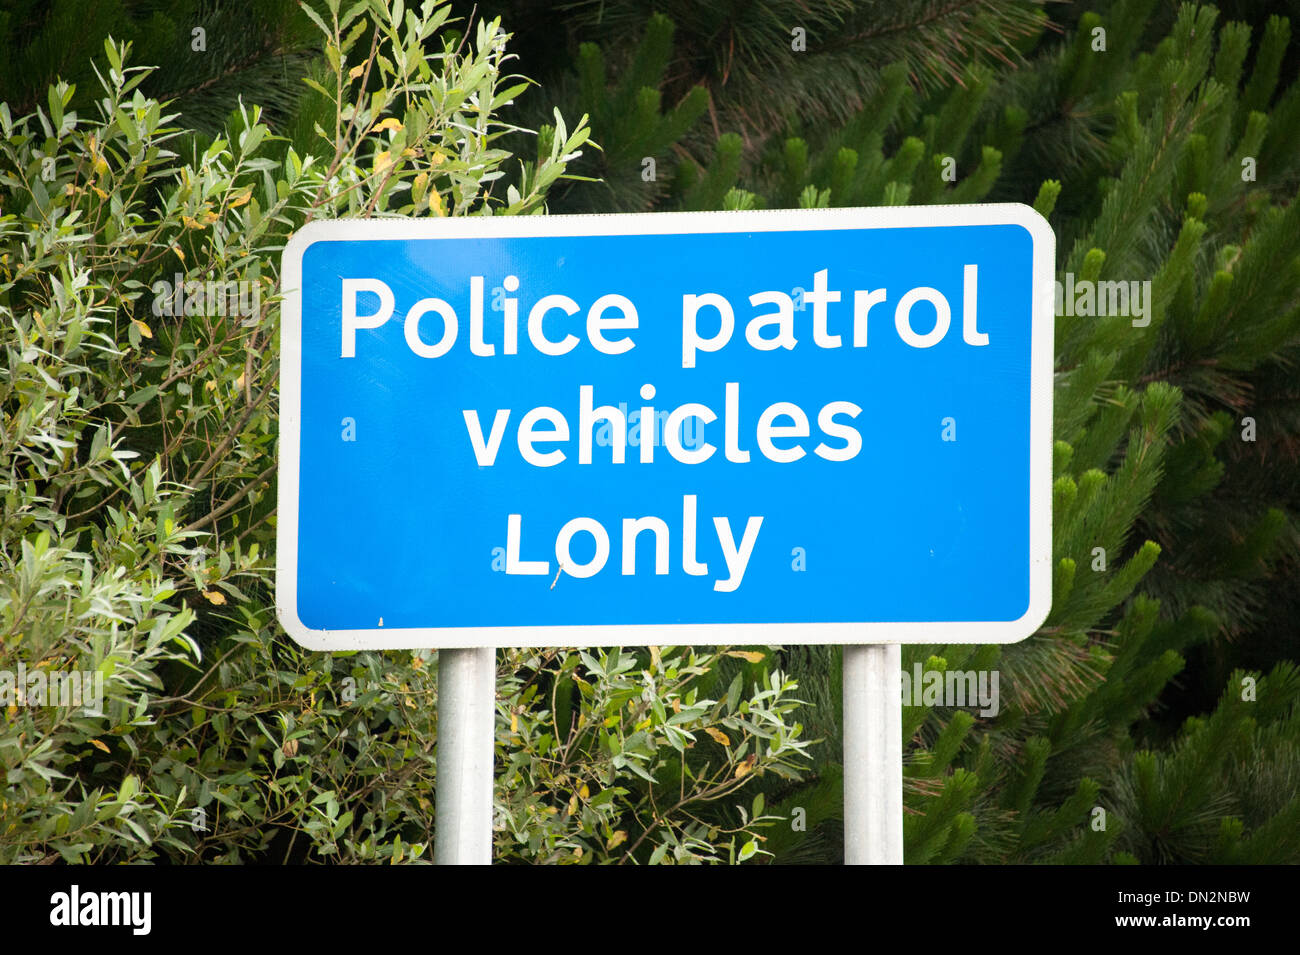 Les véhicules de patrouille de police Lonely Lonly signe modifié Funny Banque D'Images